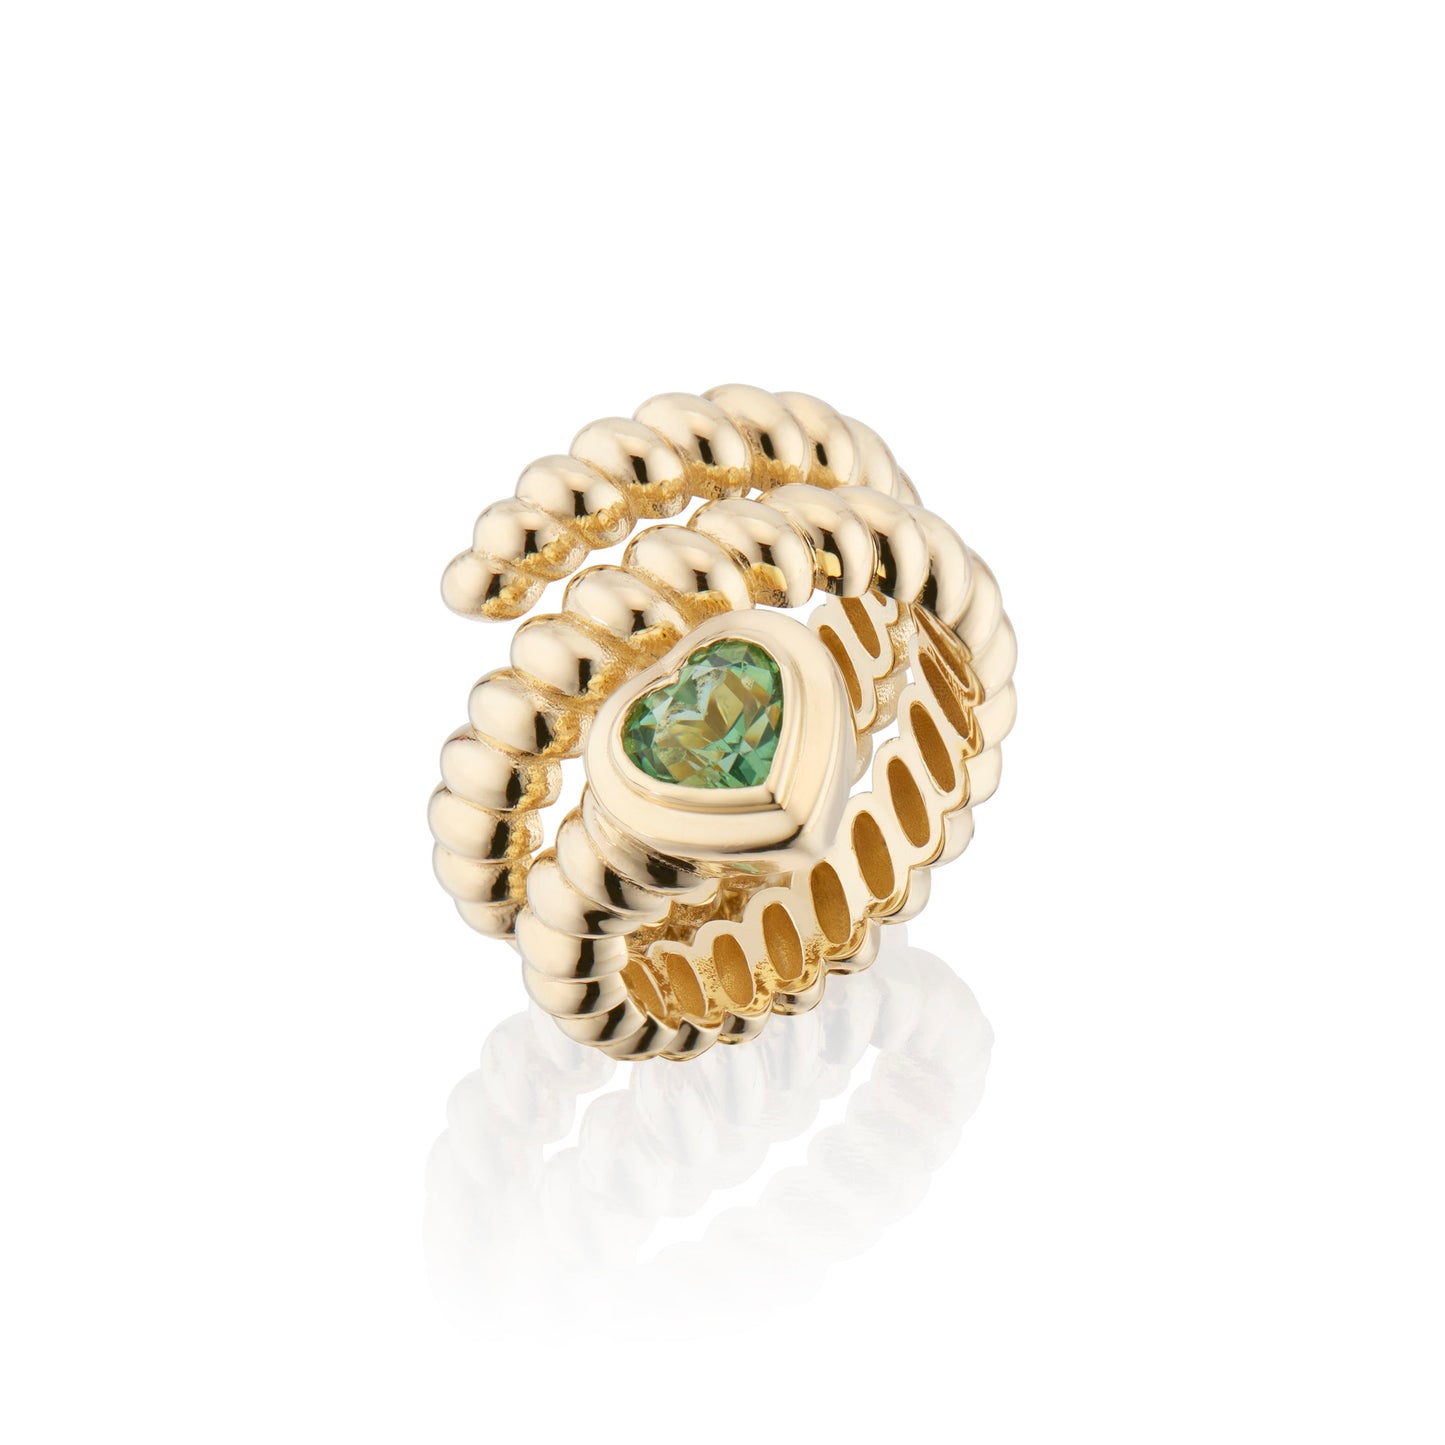 Eden Coil Love Ring with Green Tourmaline Gemstone